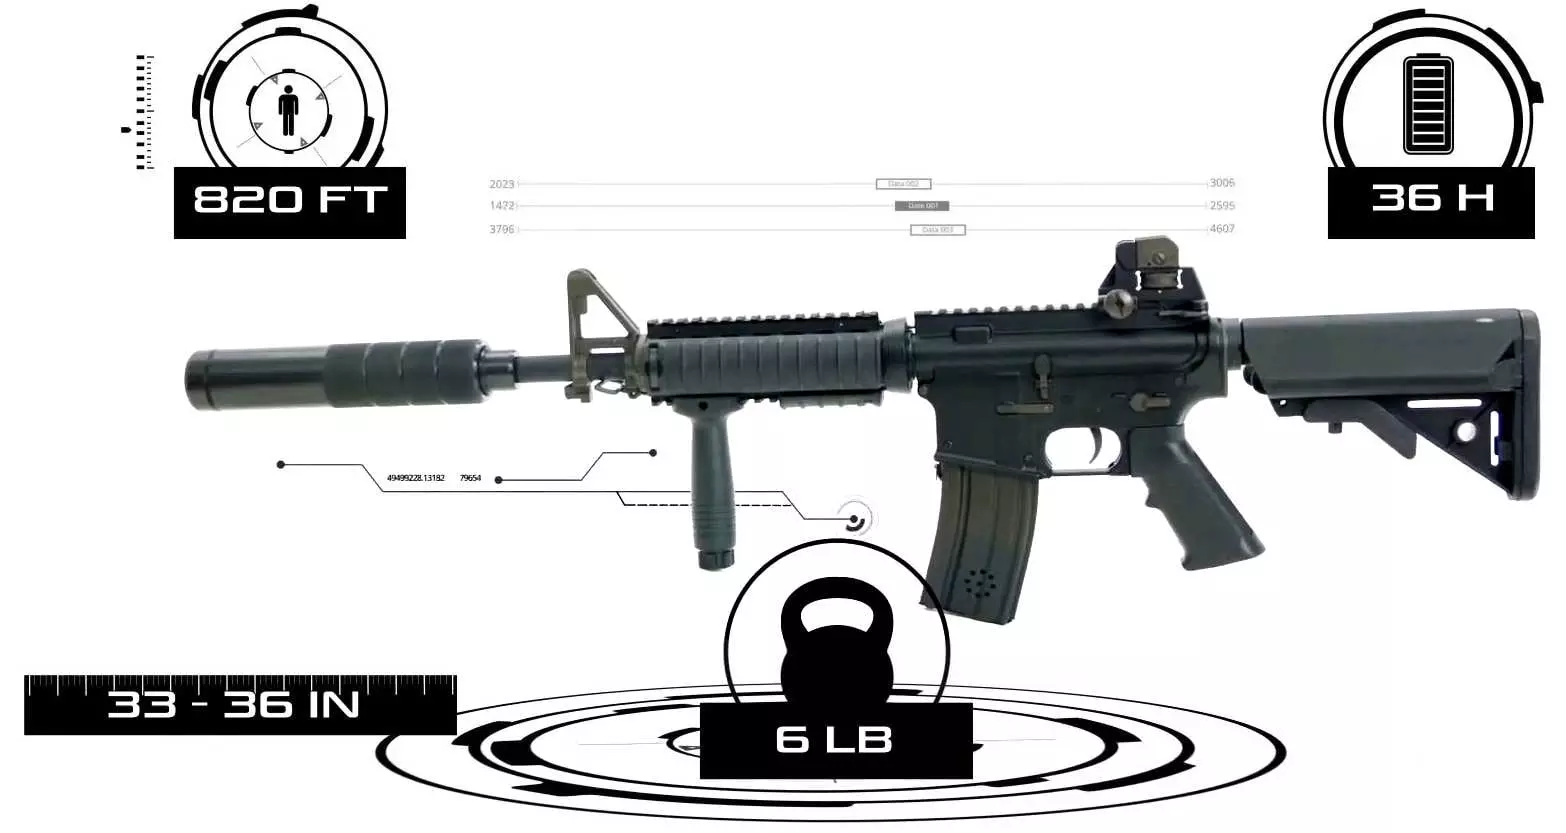 M4 laser tag gun properties